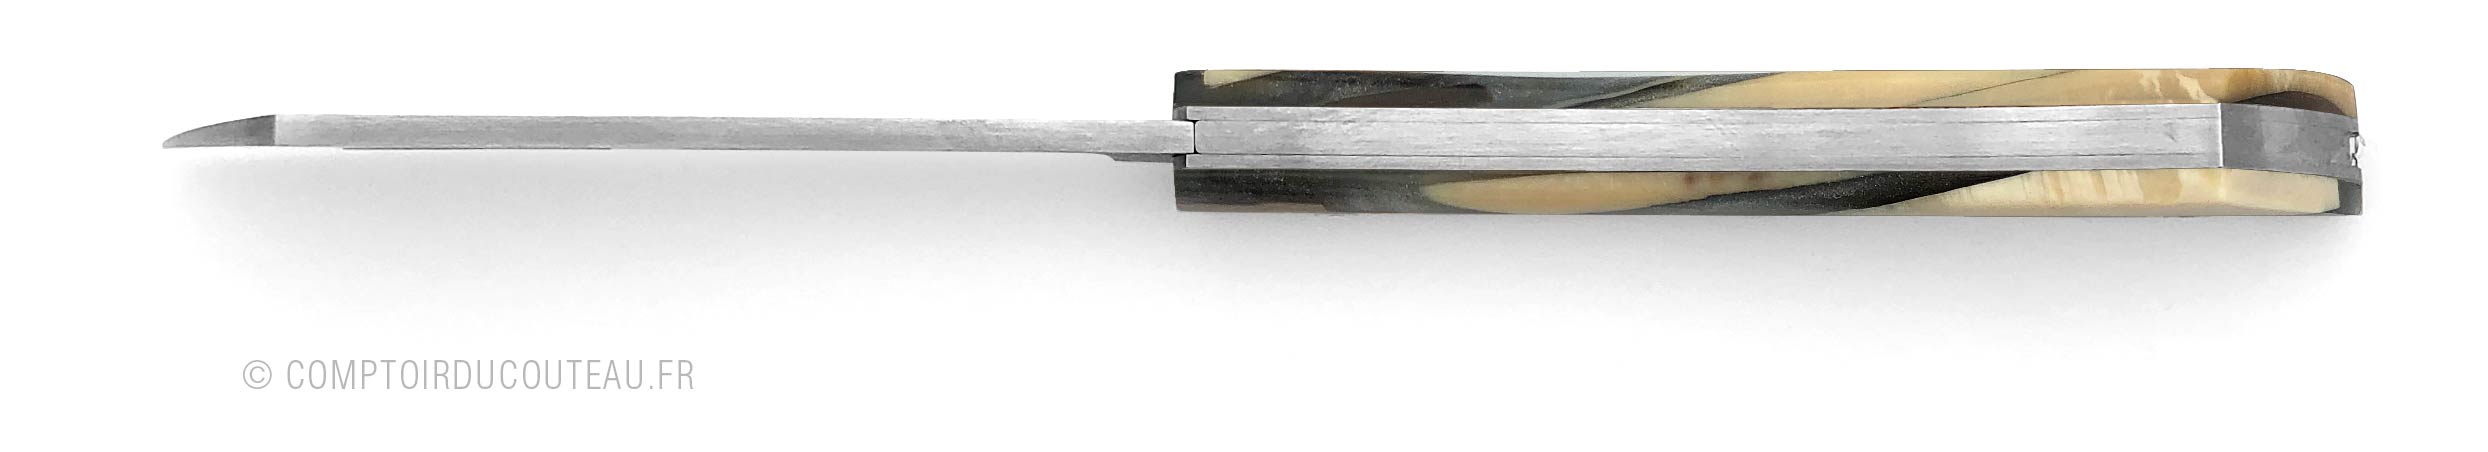 couteau arca andrea manche éclats d'ivoire de mammouth figés dans la résine grise metallisée - vue dessus